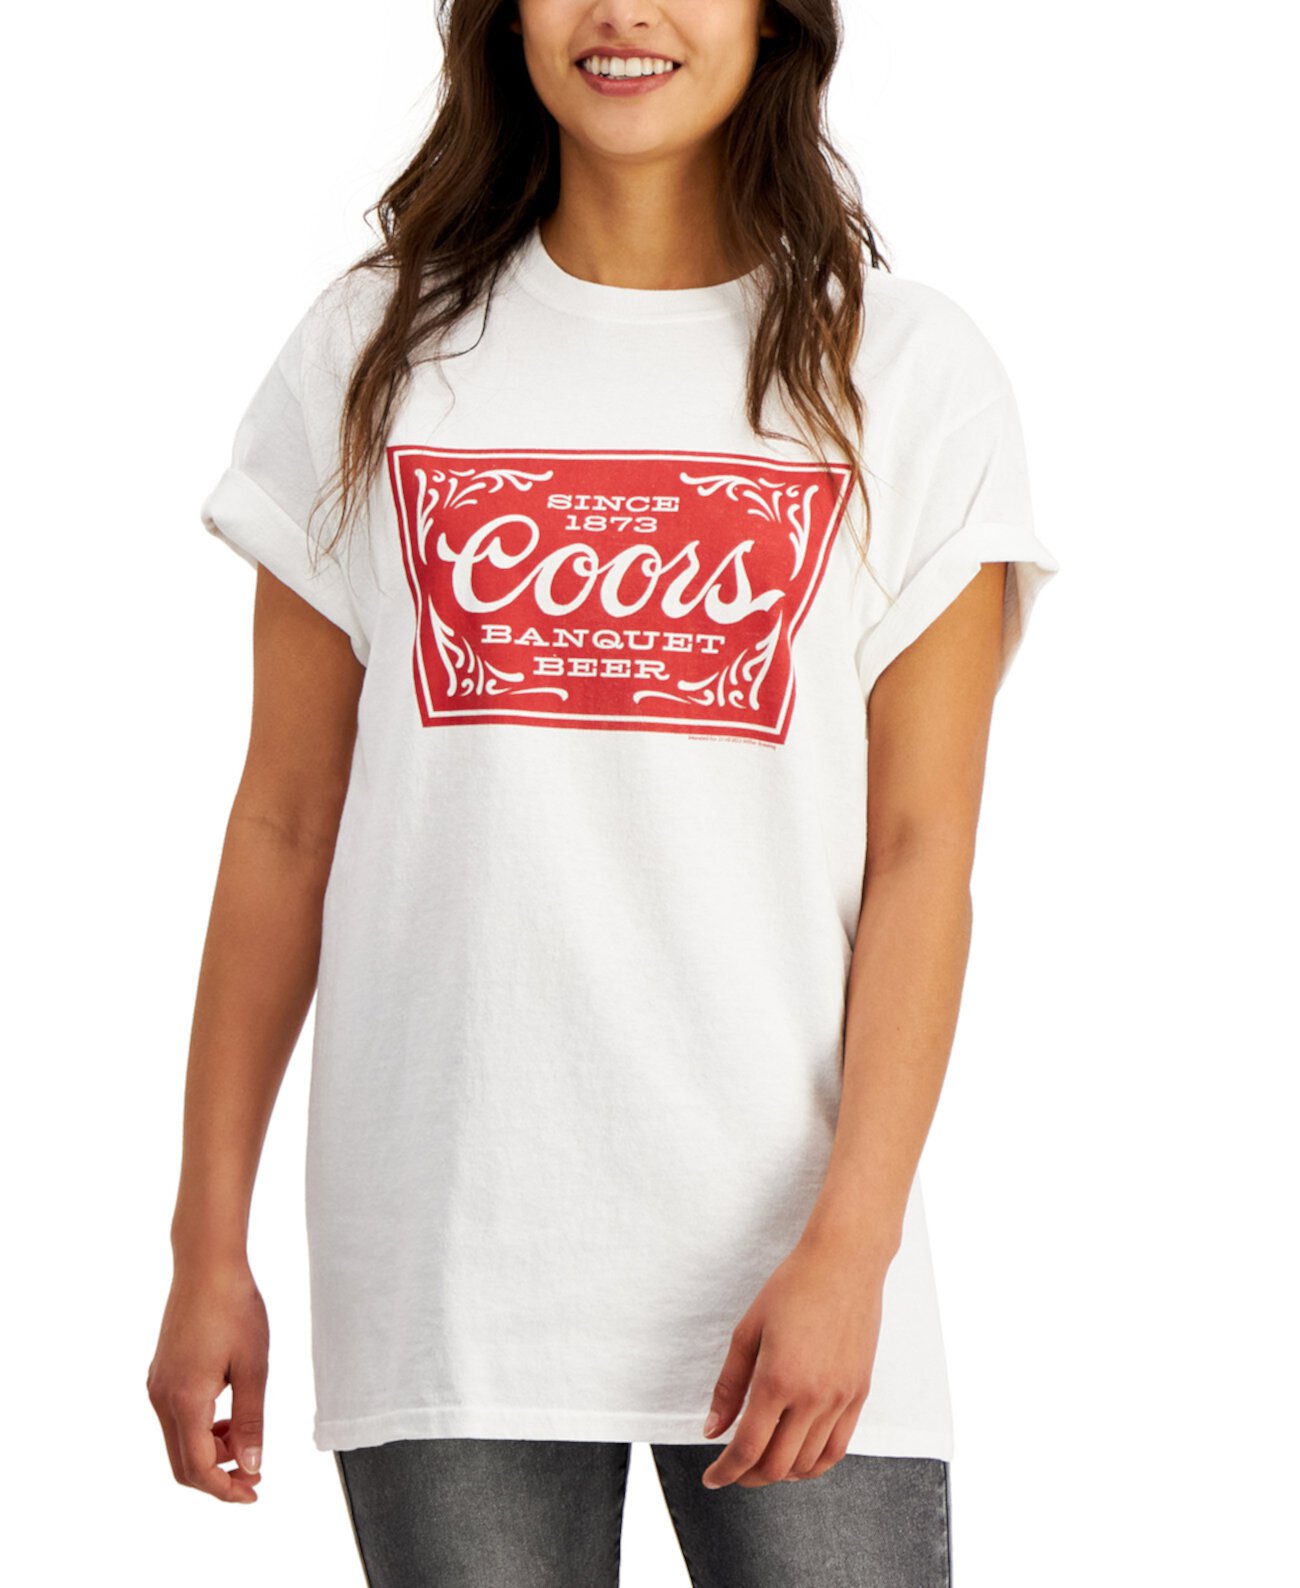 Хлопковая футболка с рисунком Coors для юниоров Junk Food